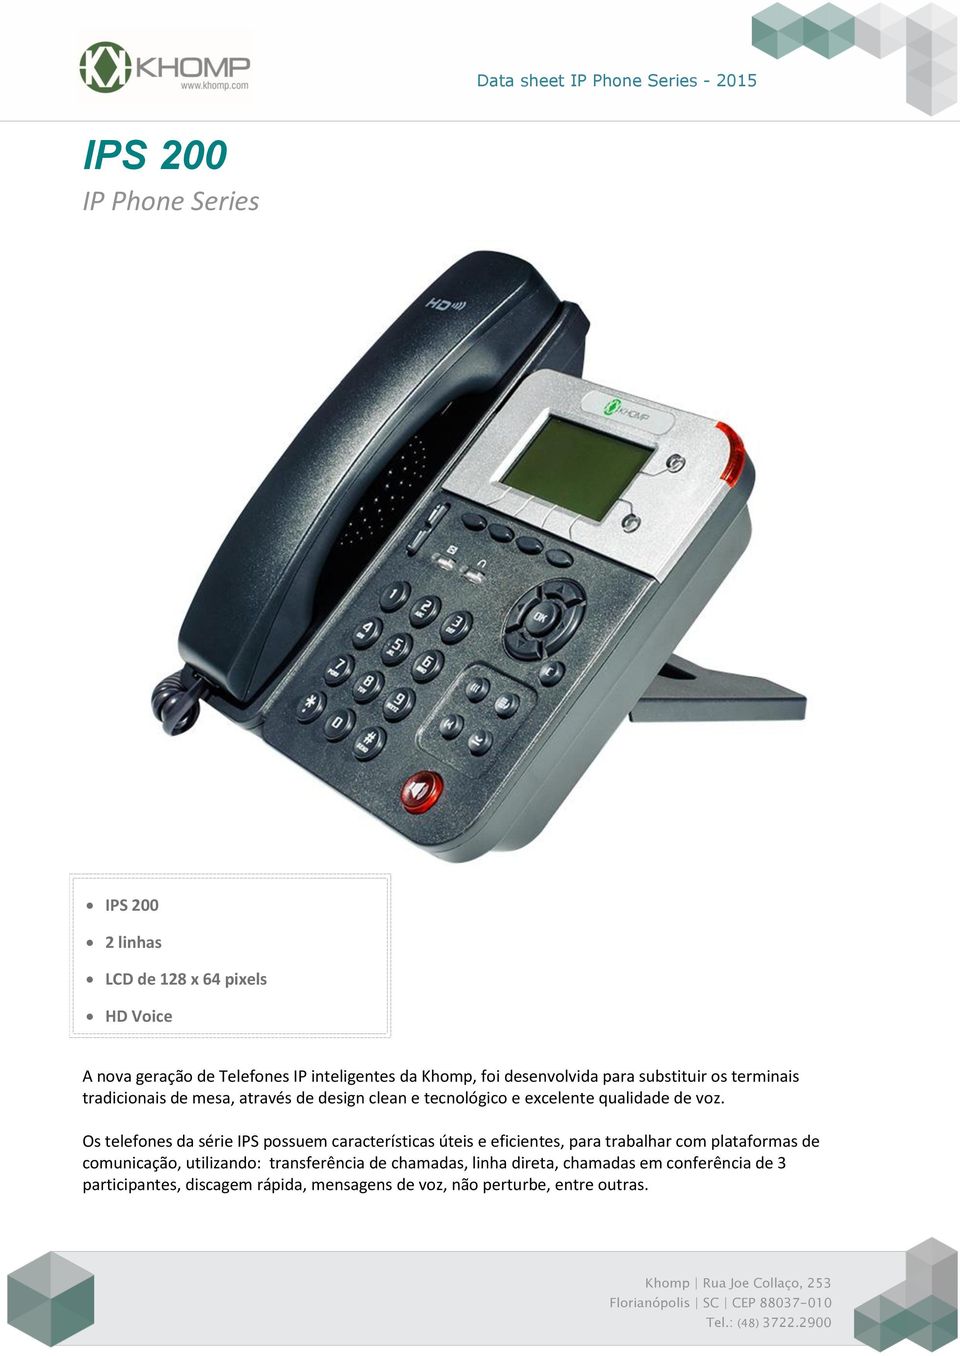 Os telefones da série IPS possuem características úteis e eficientes, para trabalhar com plataformas de comunicação, utilizando: